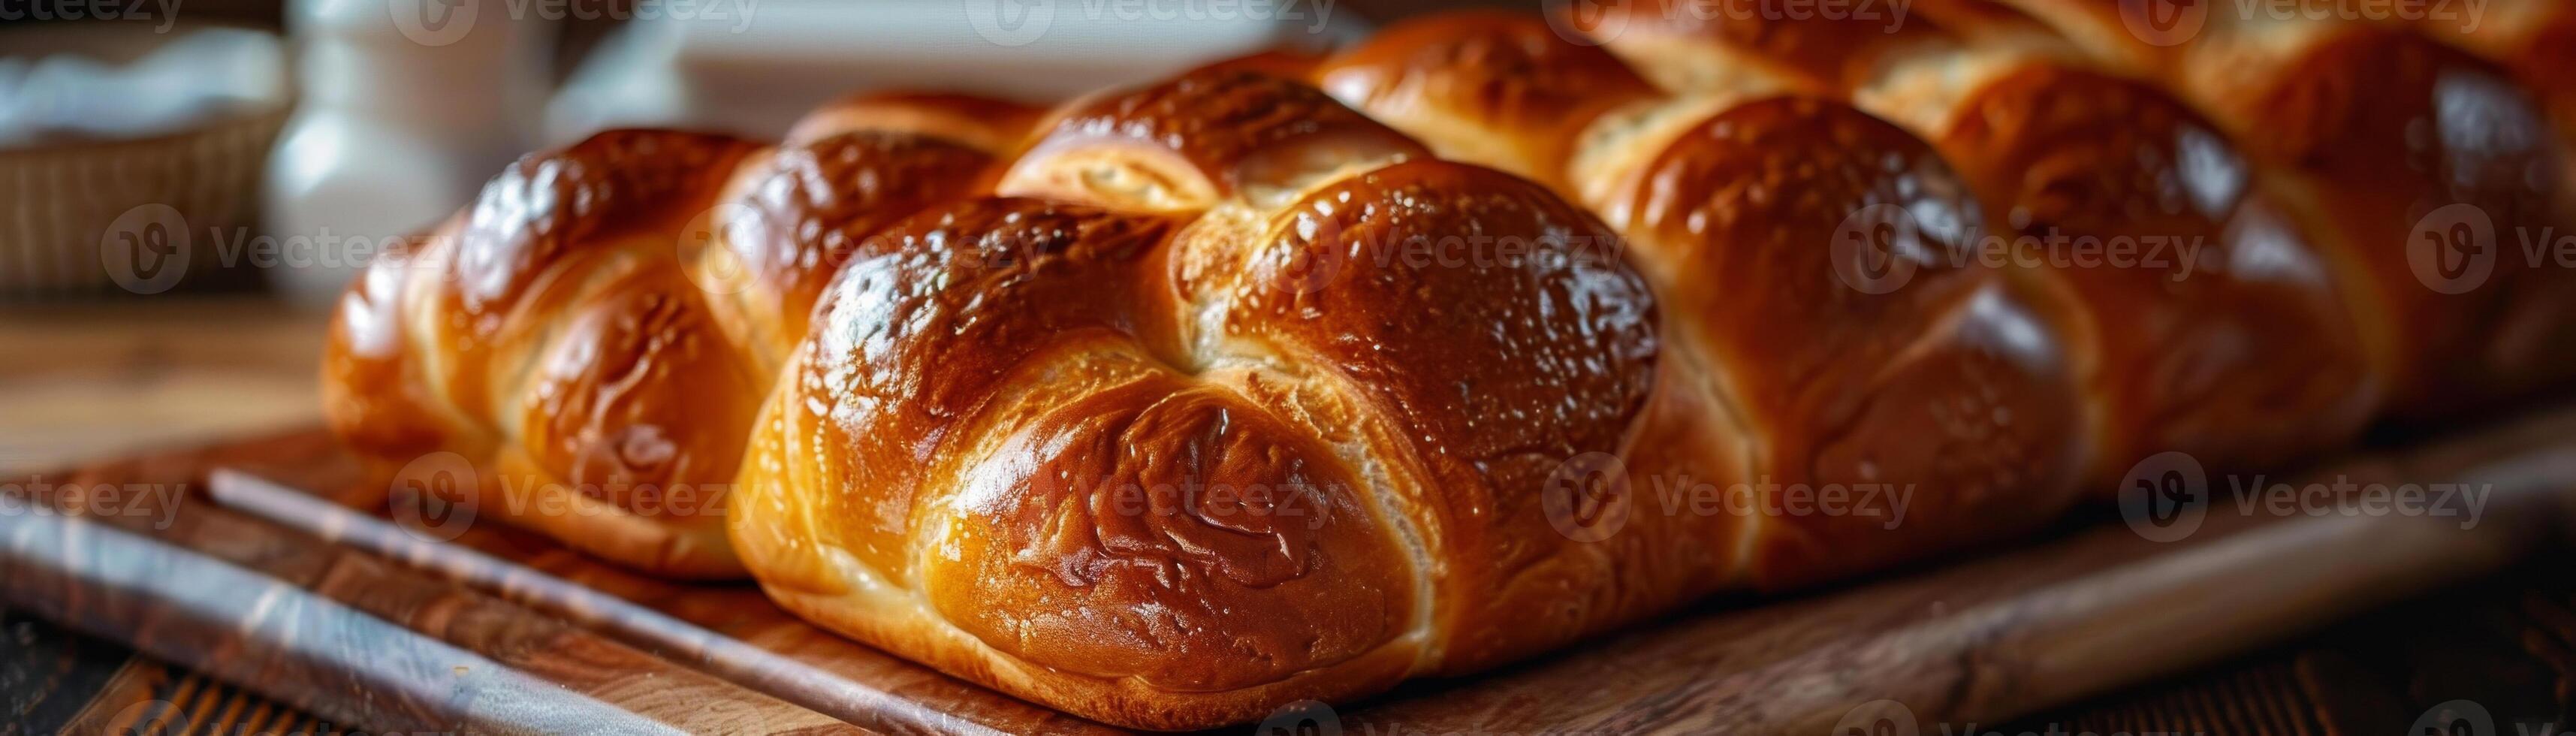 een rij van glimmend geglazuurd challah brood broden Aan een houten snijdend bord, gemarkeerd door de Keukens warm verlichting foto